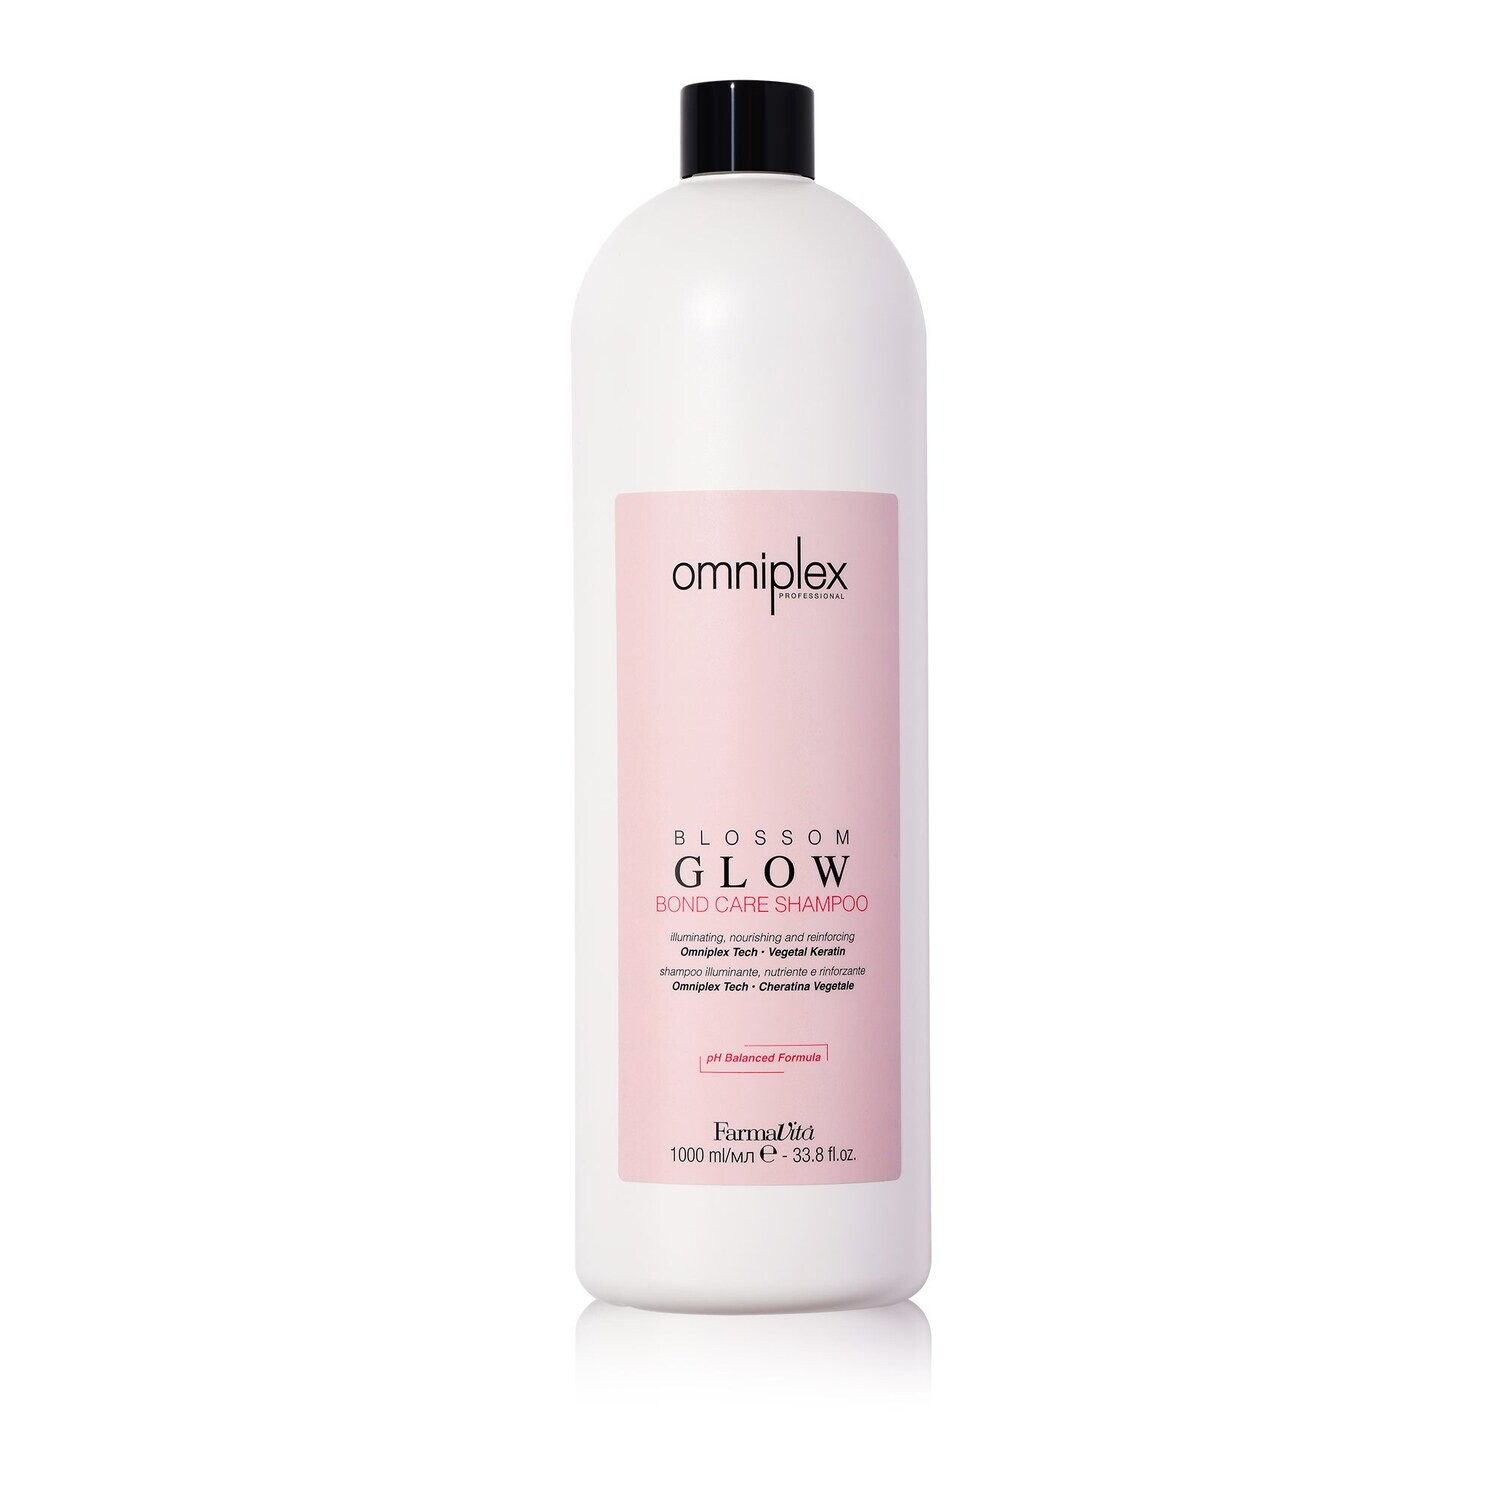 Omniplex Blossom Glow Shampoo 1000 ml NEW Мицелярный шампунь